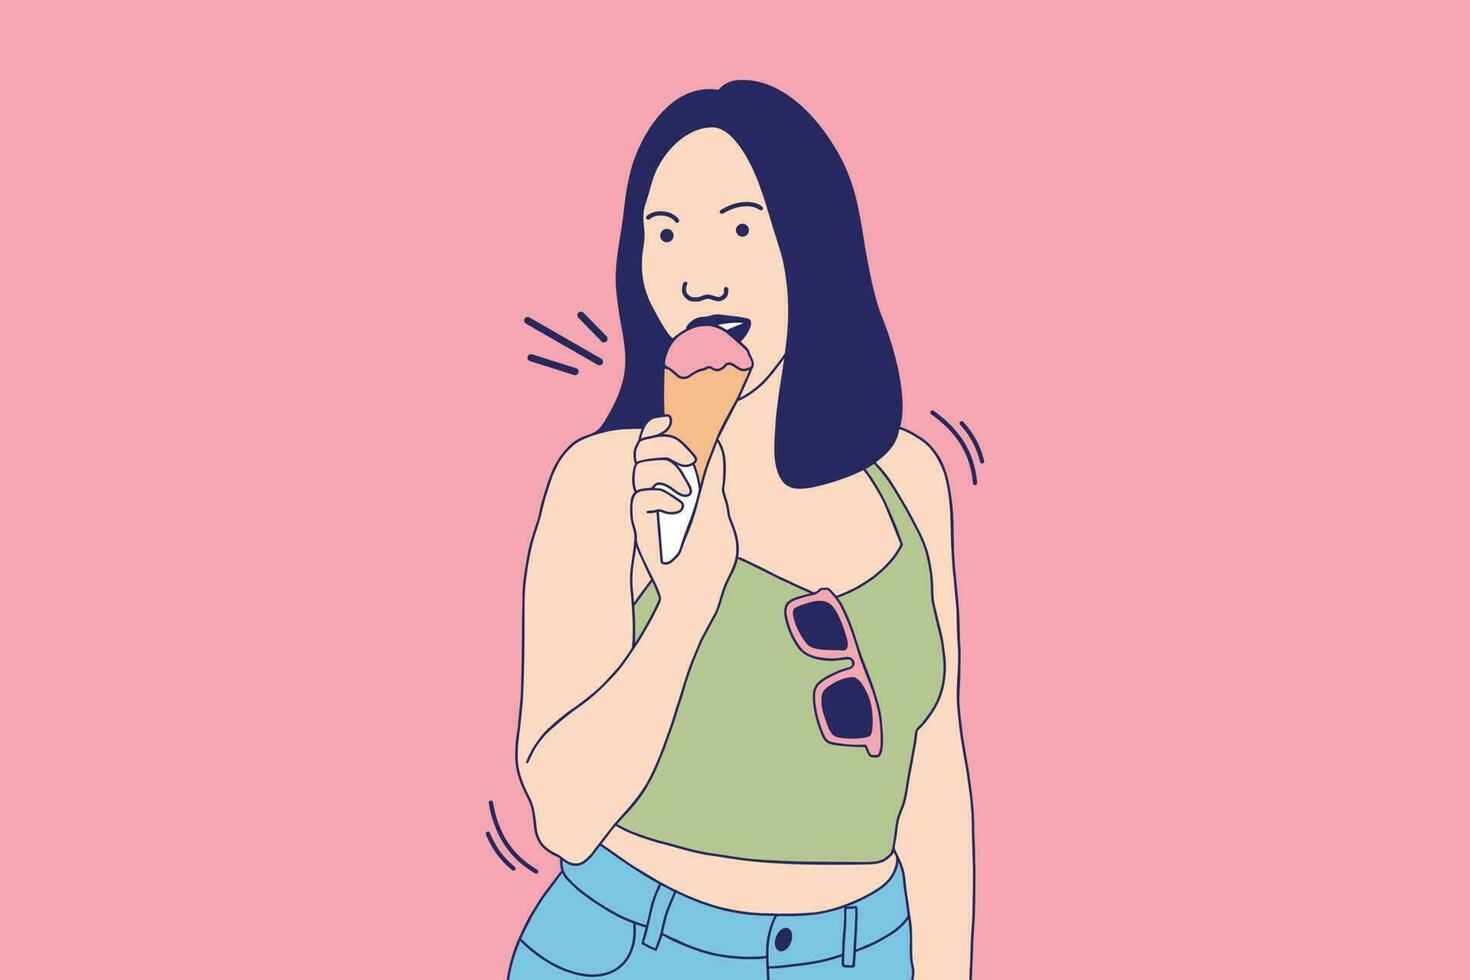 illustraties mooi jong vrouw aan het eten aardbei ijs room Bij zomer vector